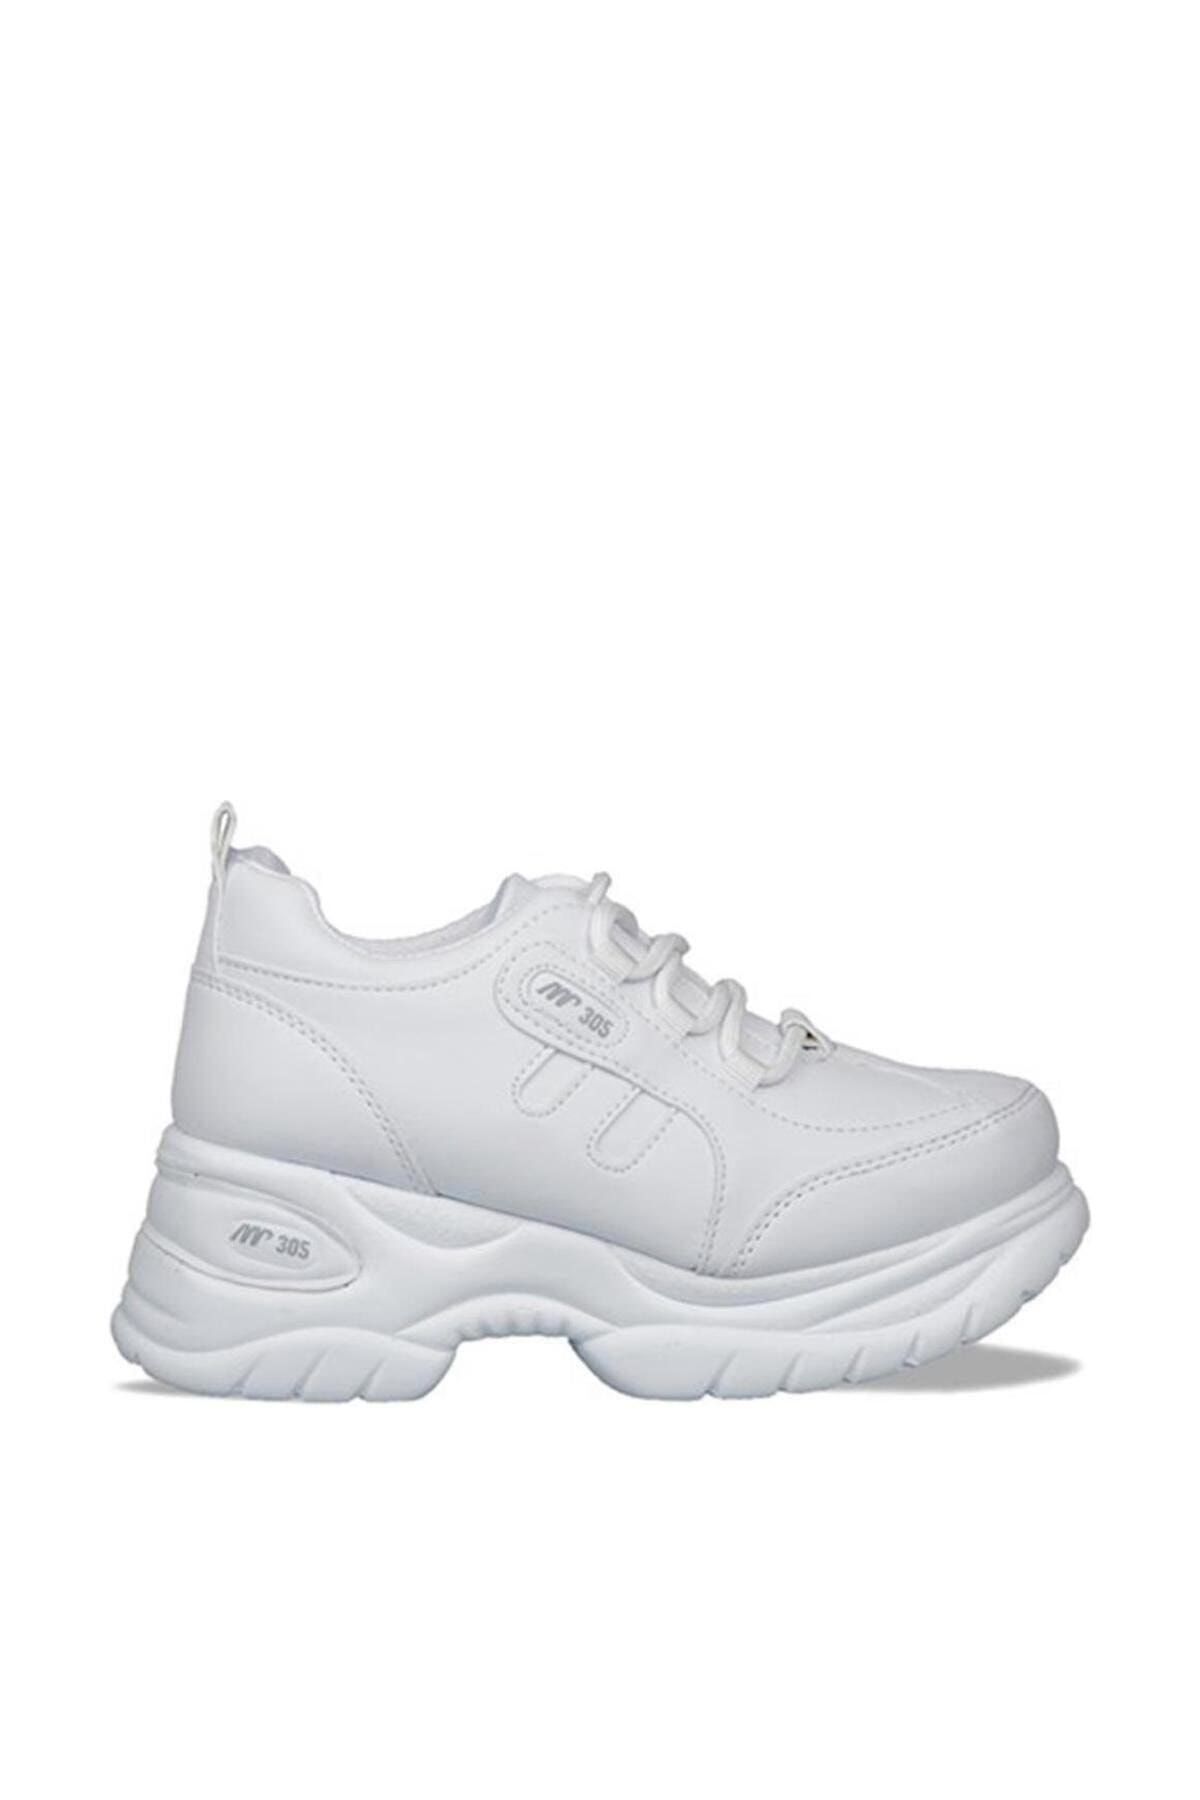 MP 212-305 Casual Beyaz Kadın Dolgu Topuk Sneakers